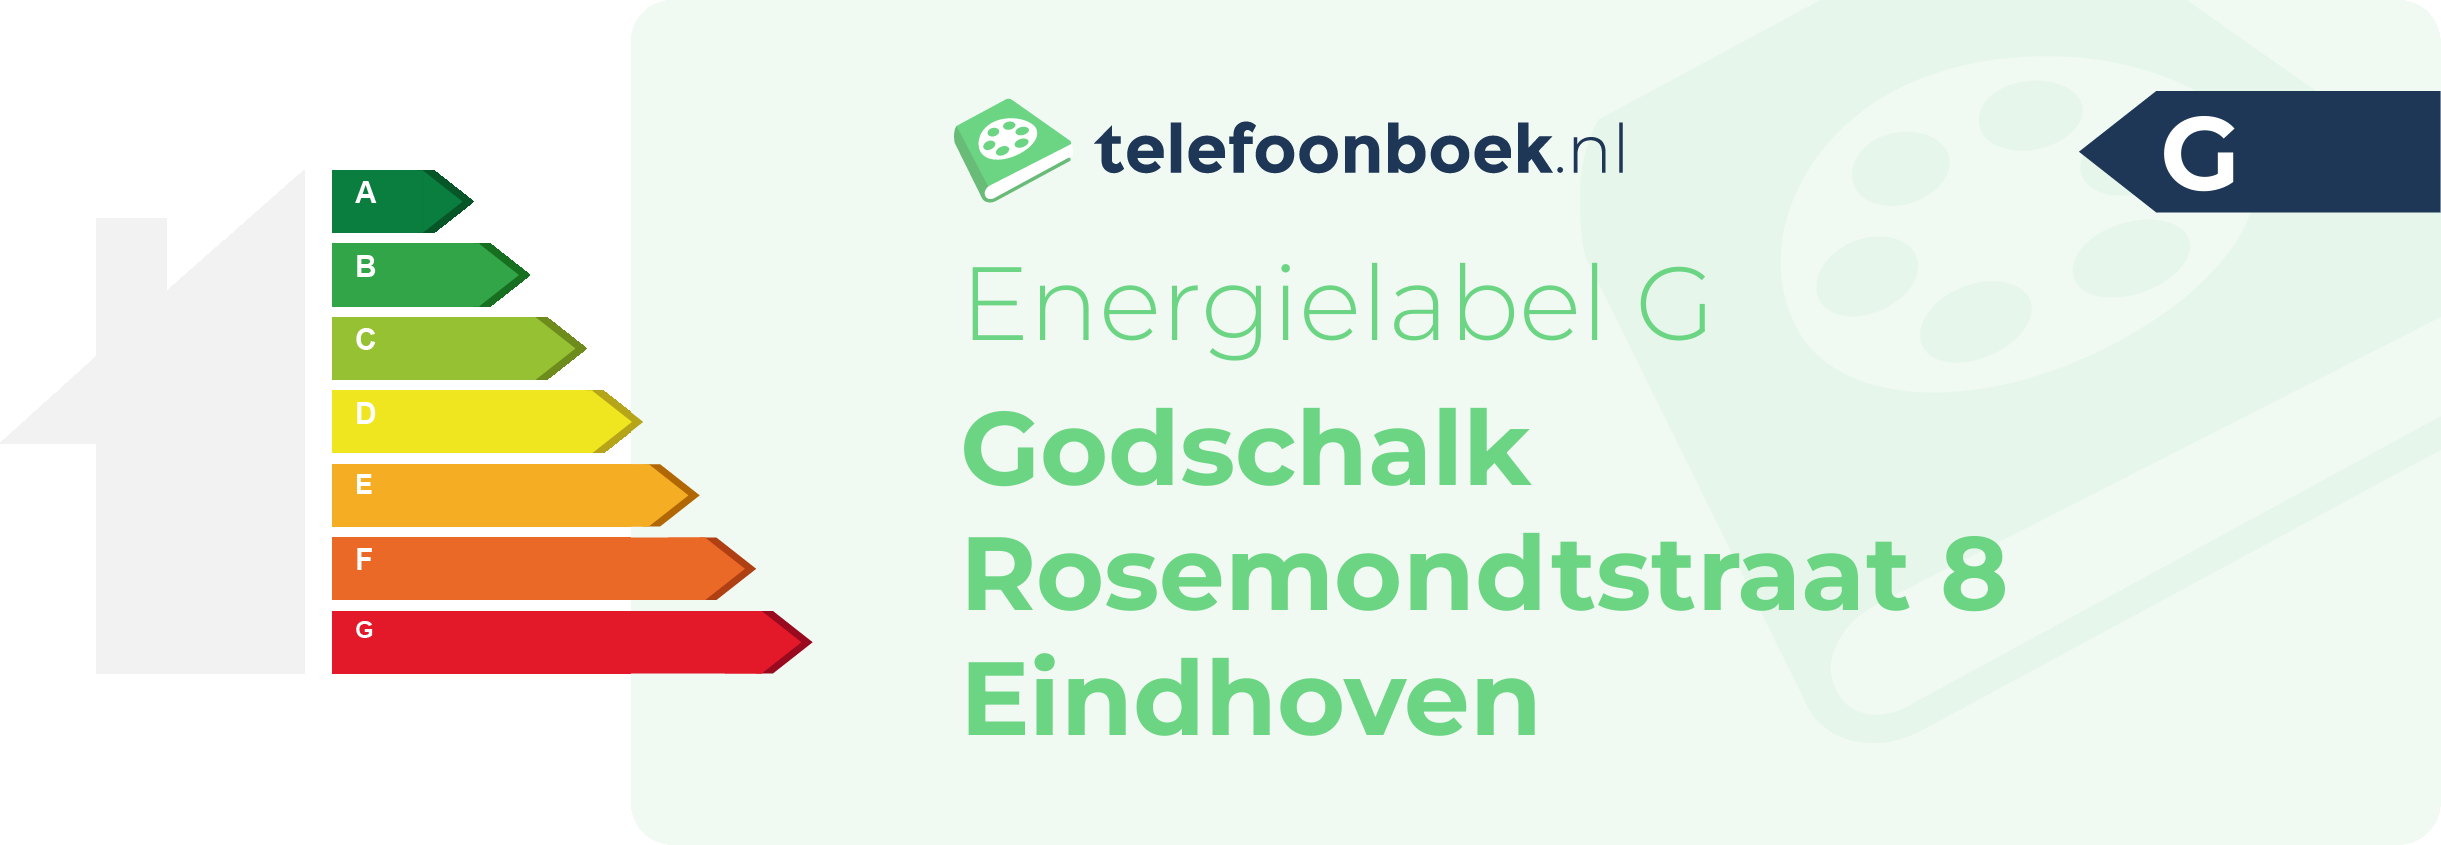 Energielabel Godschalk Rosemondtstraat 8 Eindhoven